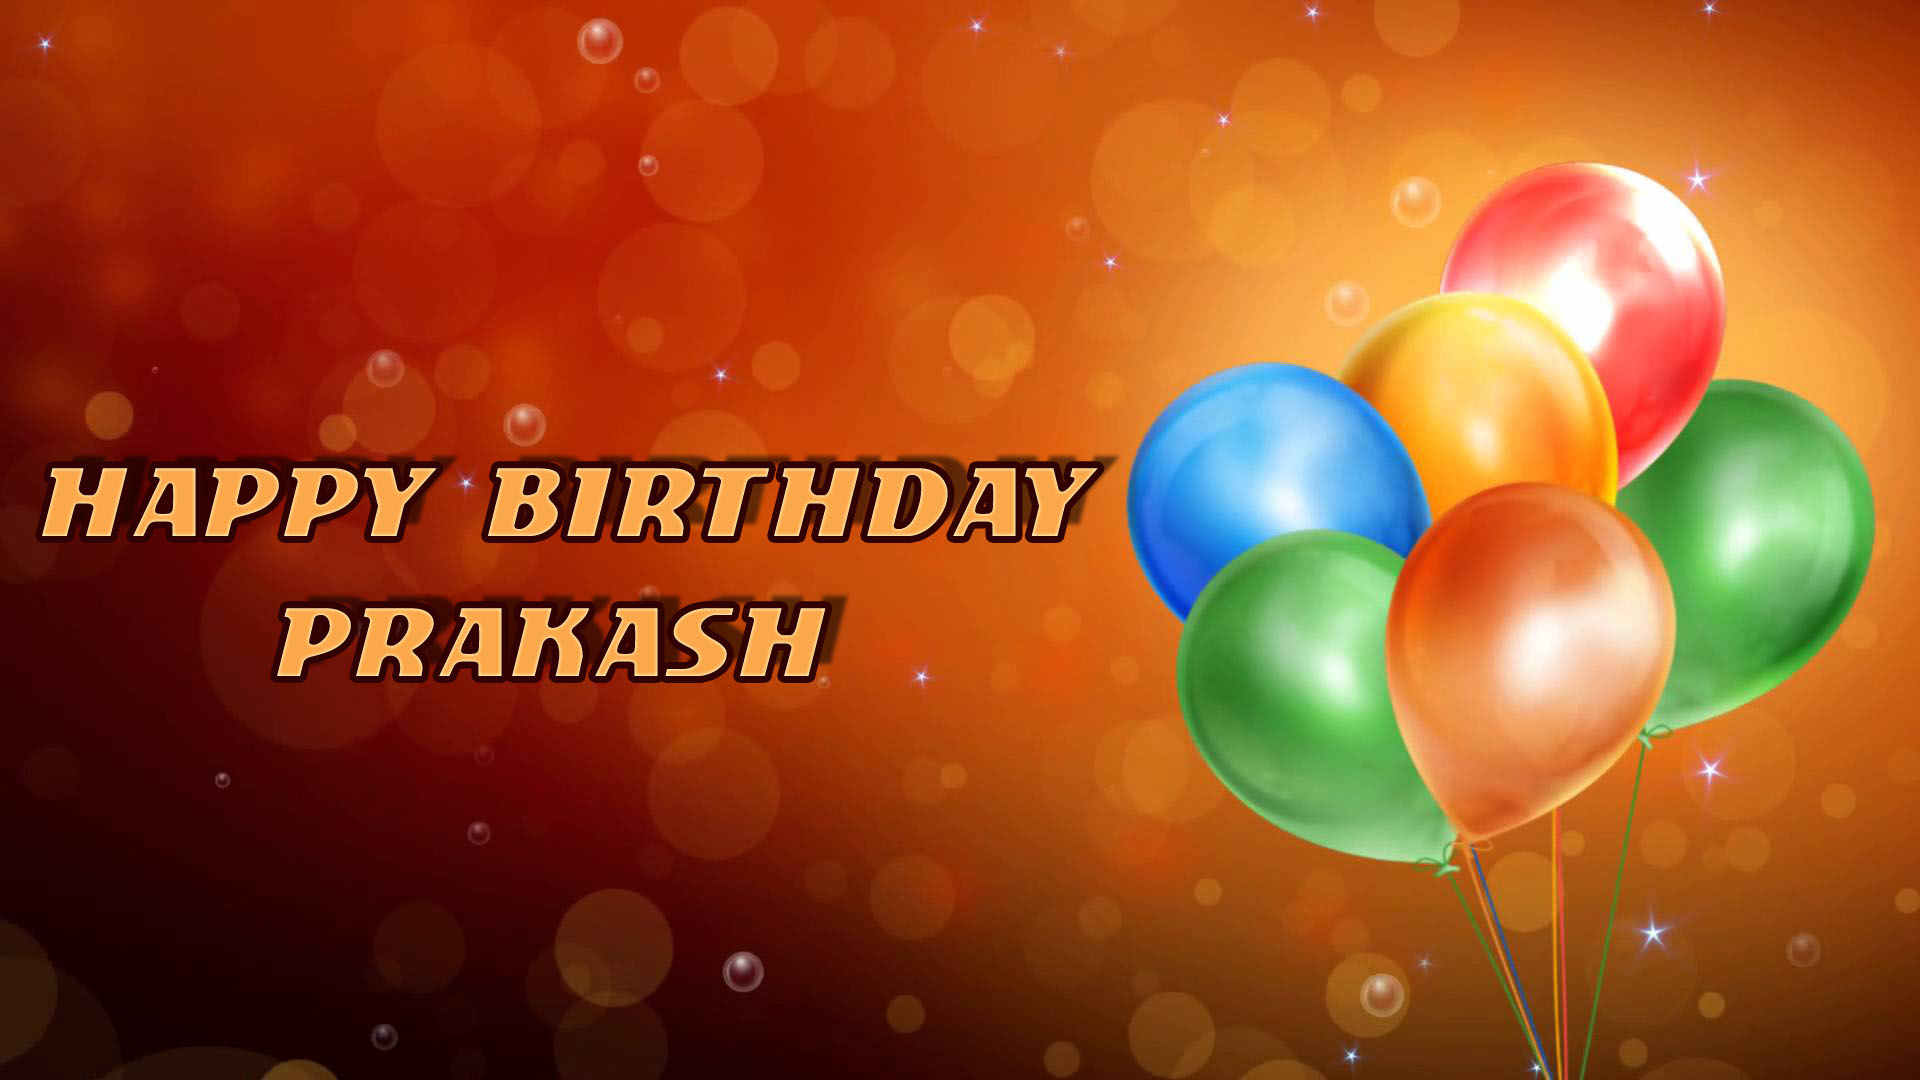 images with names Happy Birthday Prakash image